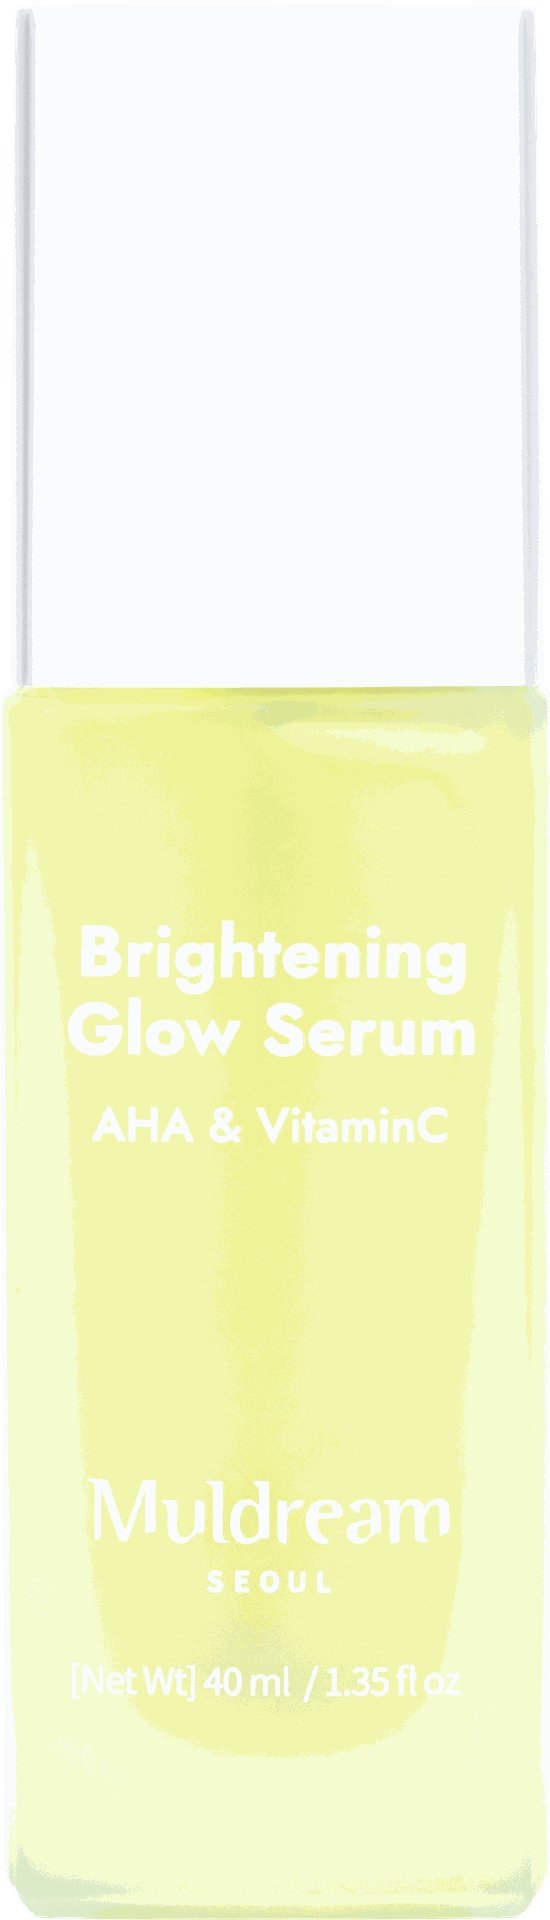 Serum Muldream Brightening Glow Serum-AHA Vitamin C 40ml